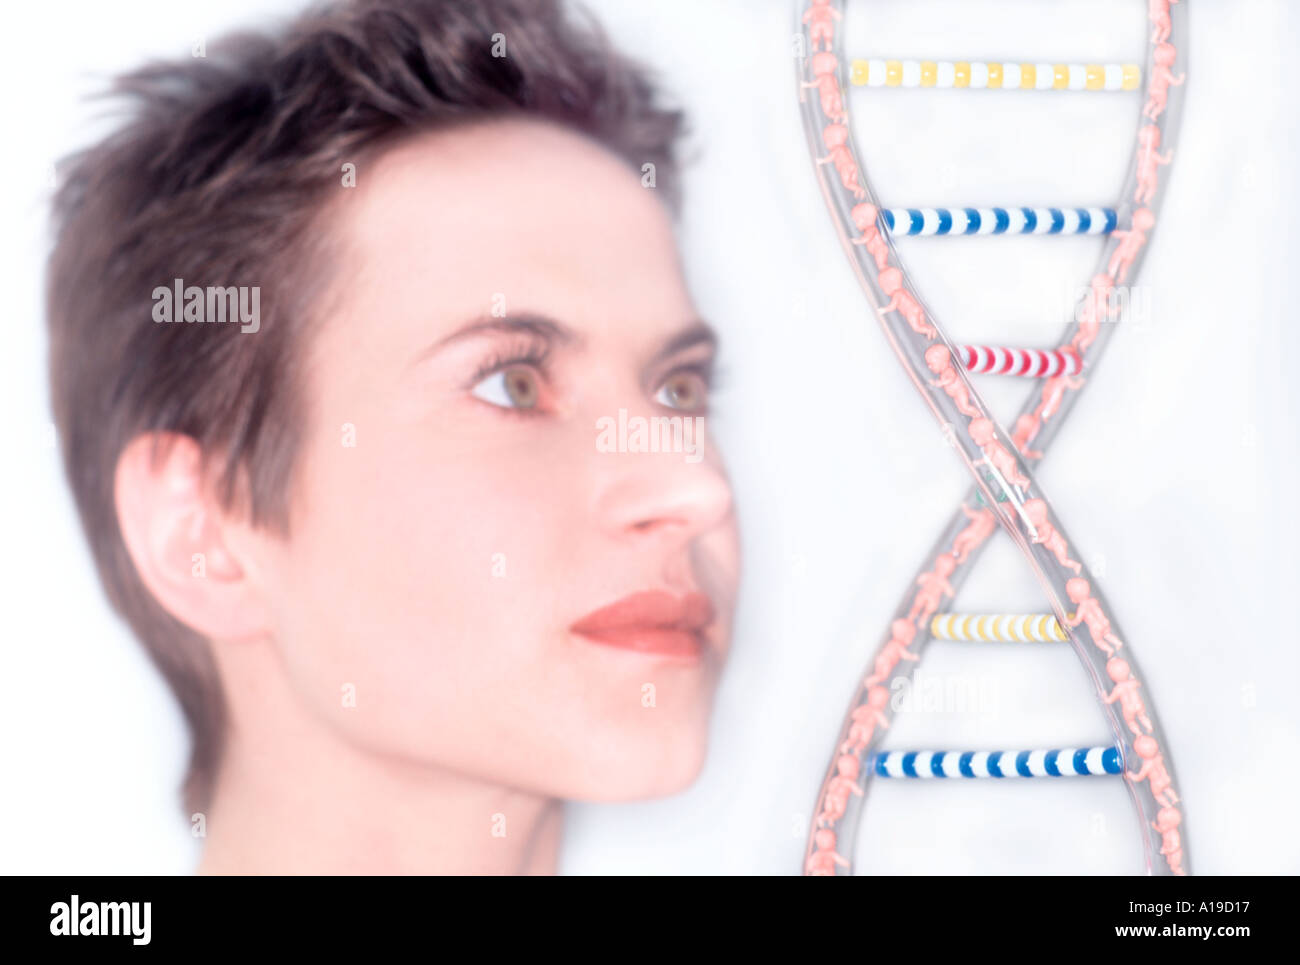 Femaile Laborantin Blick auf gegenständliche Modell der DNA-helix Stockfoto